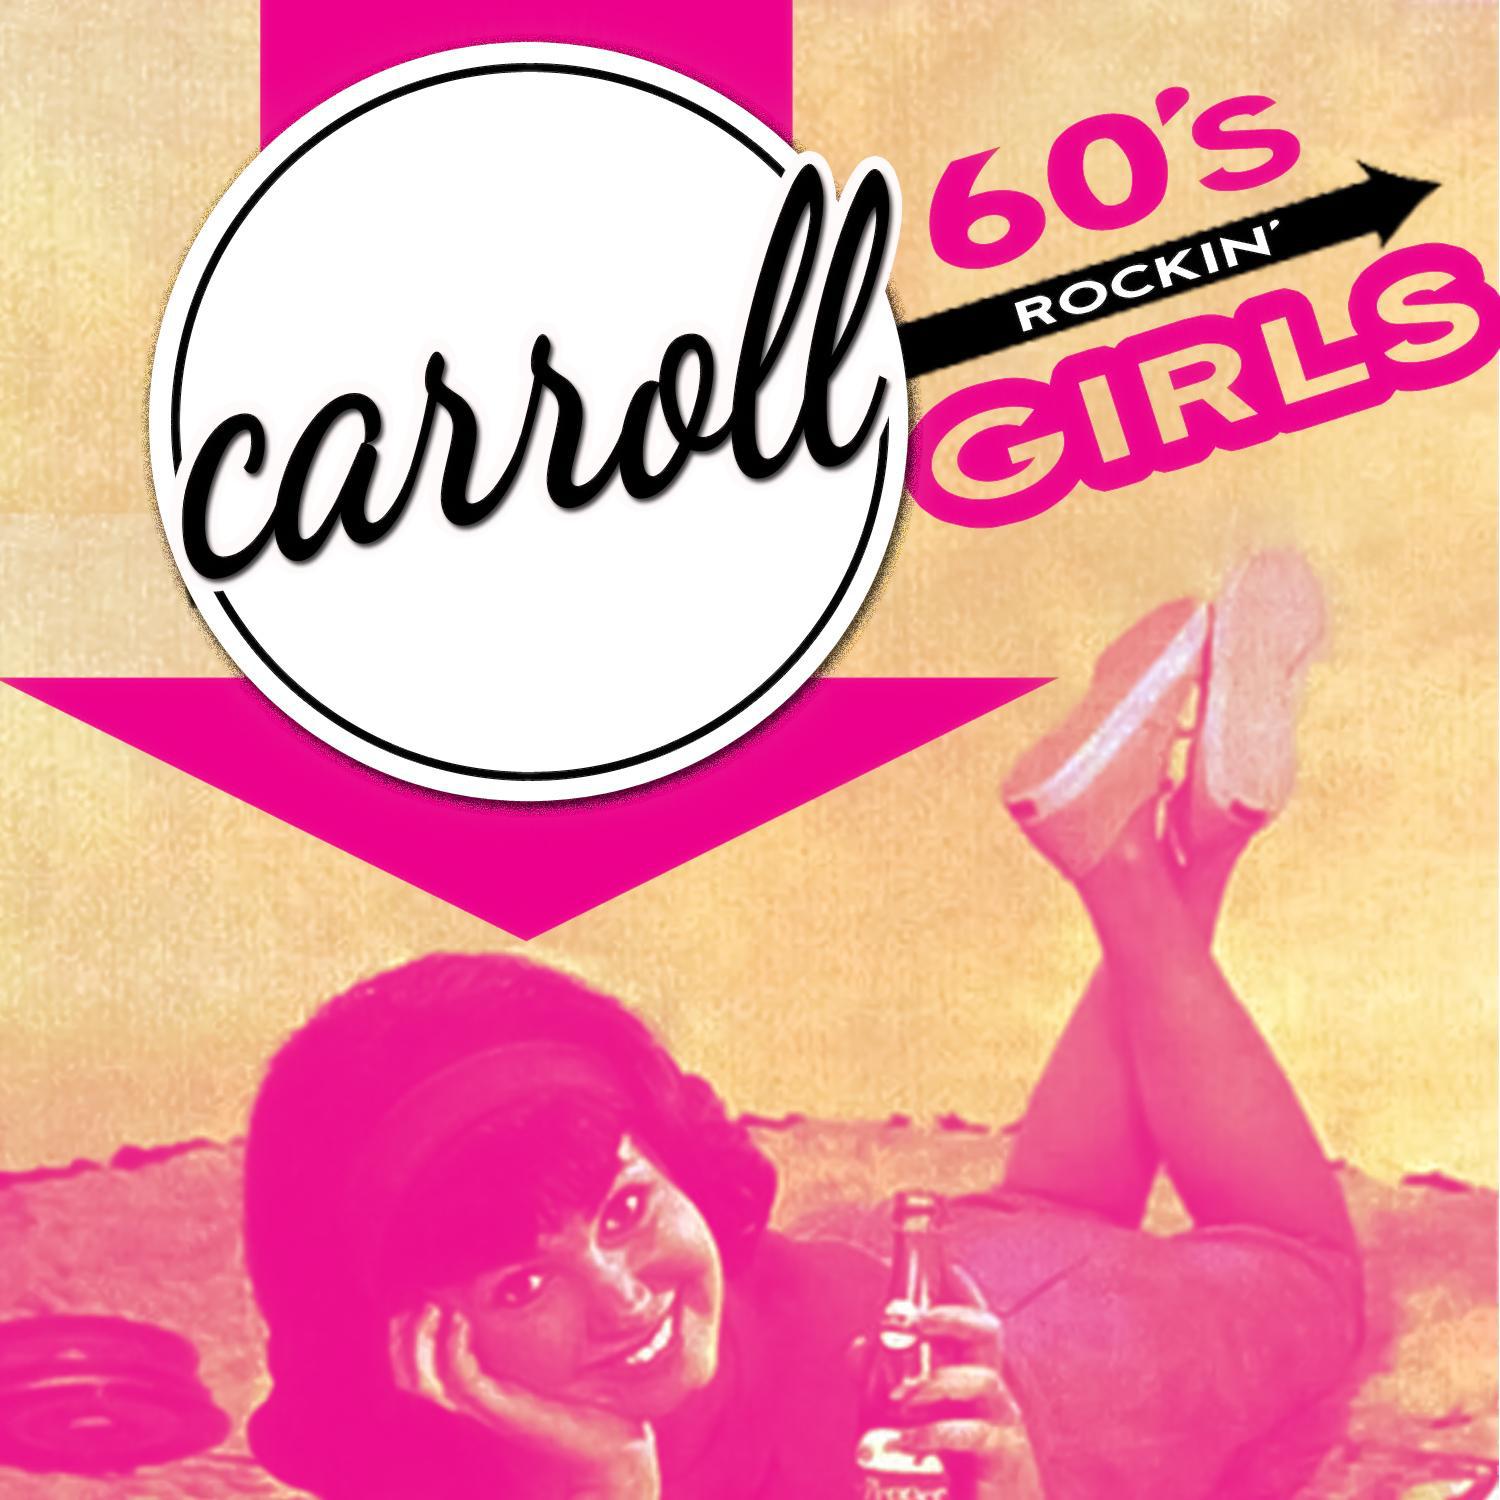 Carroll - '60s Rockin' Girls